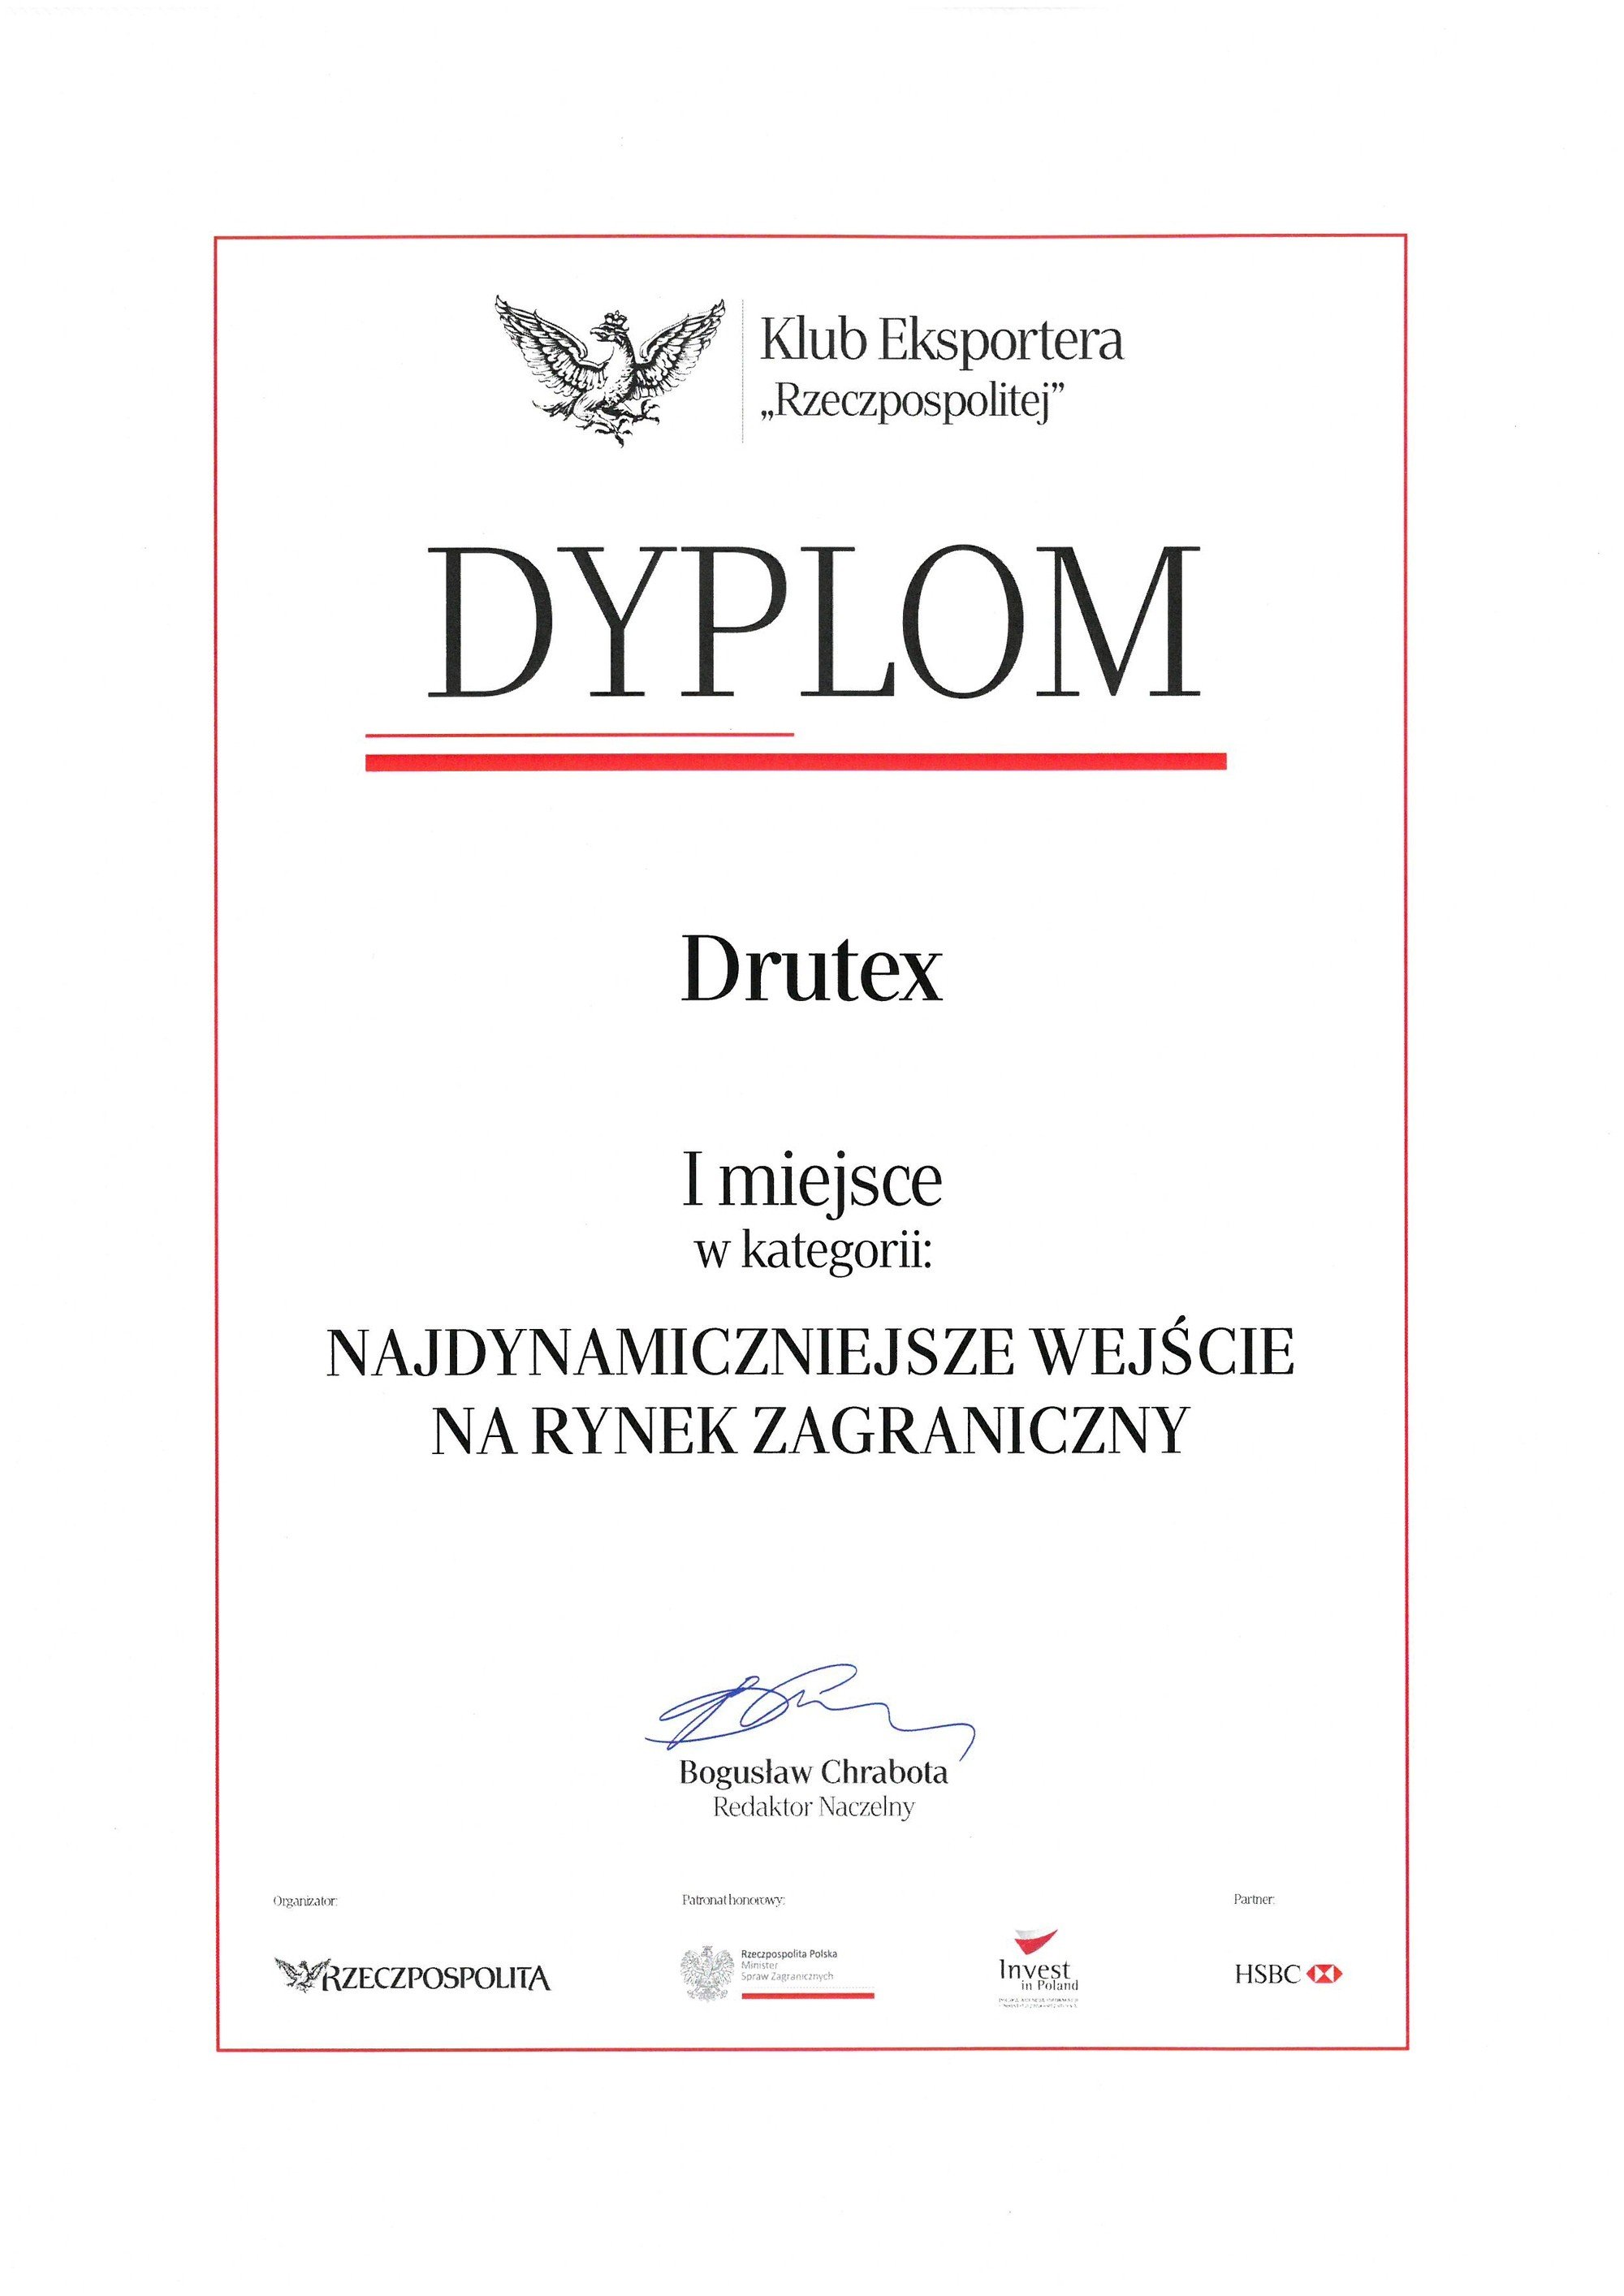 DRUTEX vince al concorso della Rzeczpospolita!